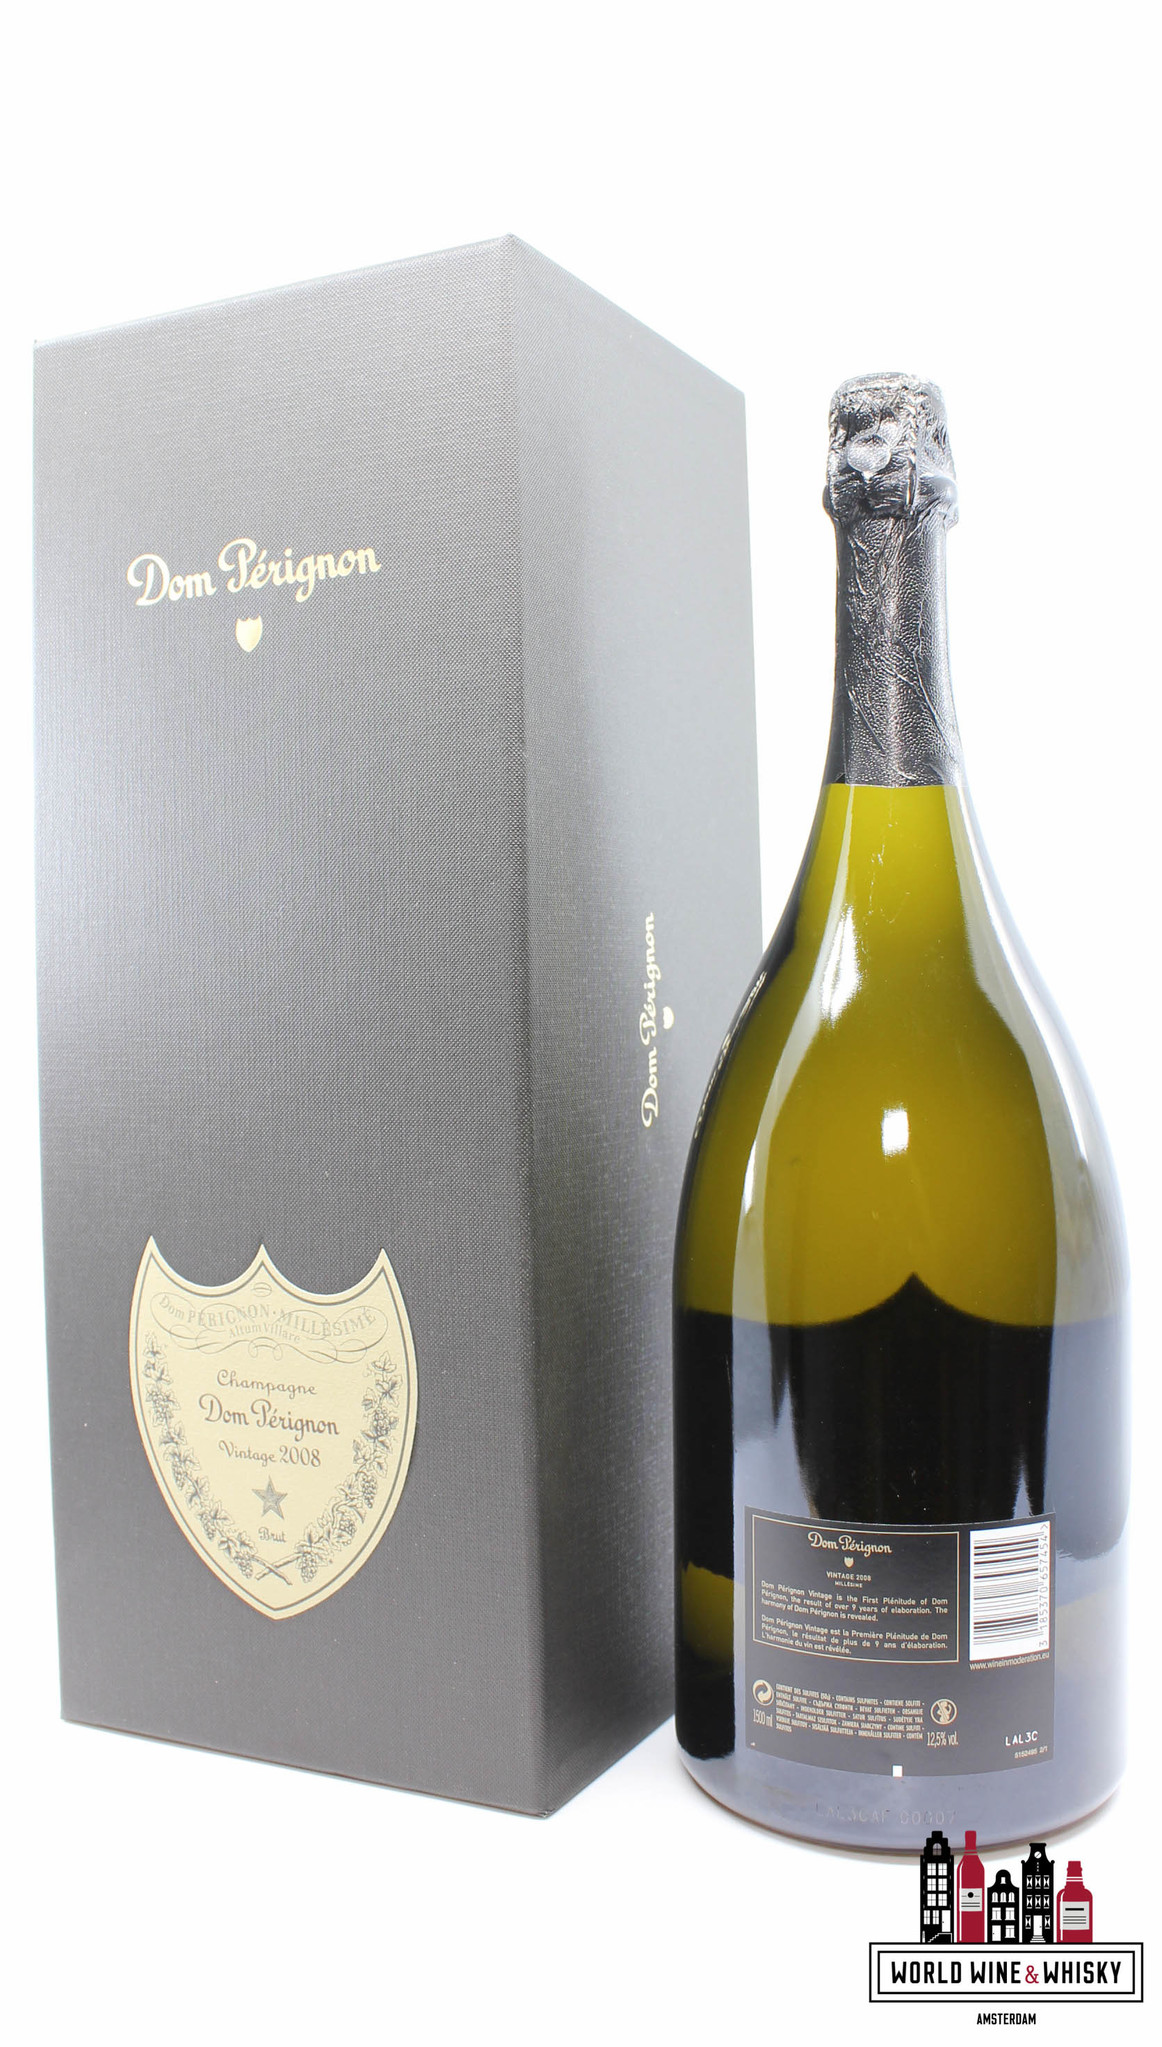 Dom Perignon Dom Perignon 2008 Vintage Magnum - Champagne Brut 1,5 liter - (in luxury giftbox)